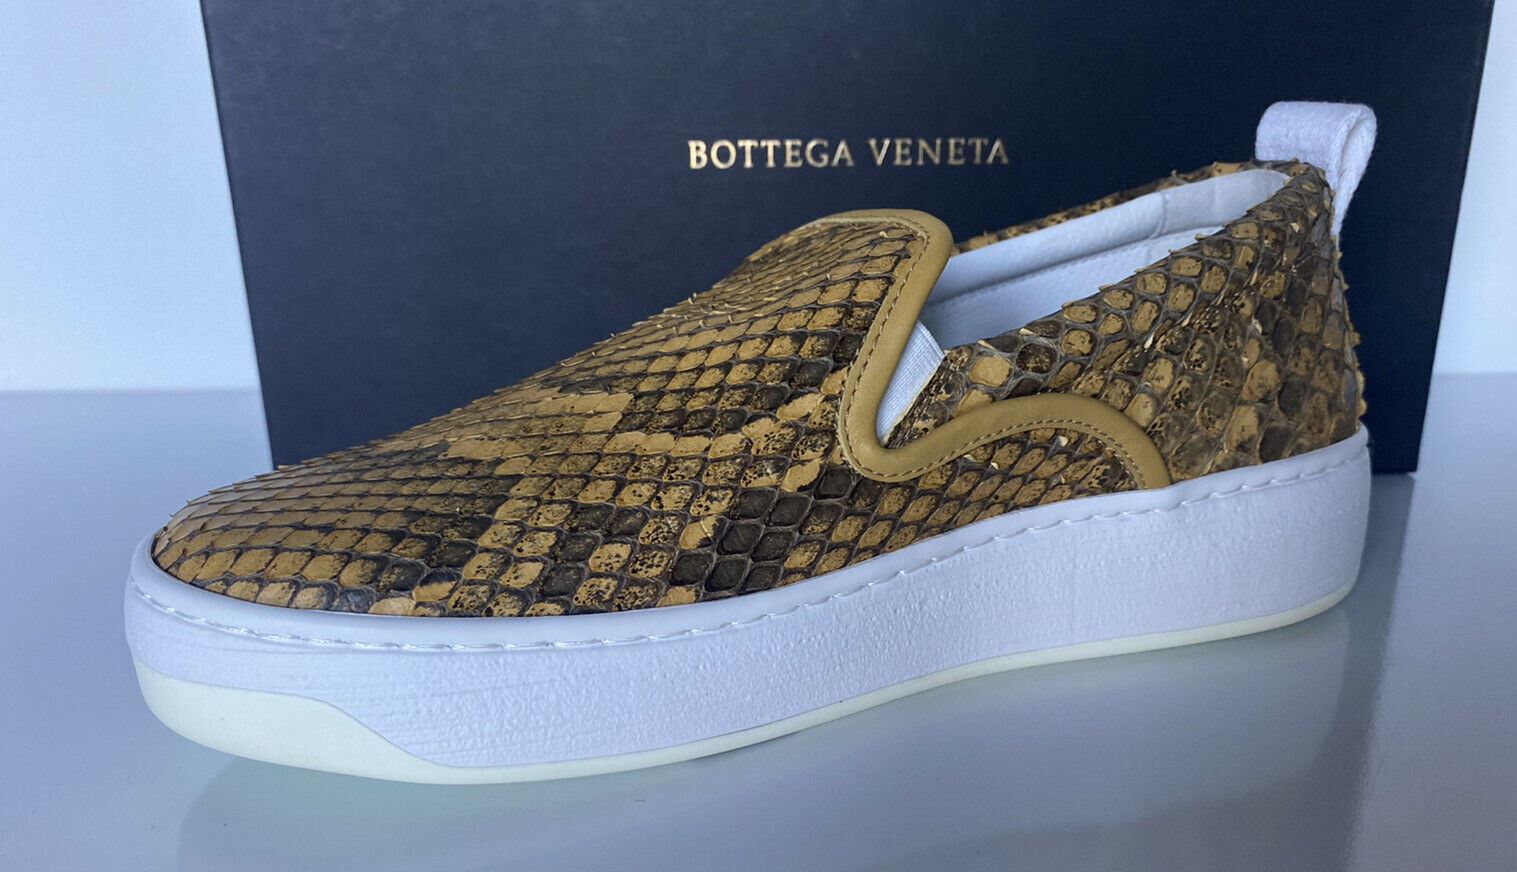 Кроссовки на платформе из кожи питона Bottega Veneta 870 долларов США (38 евро) 579405 